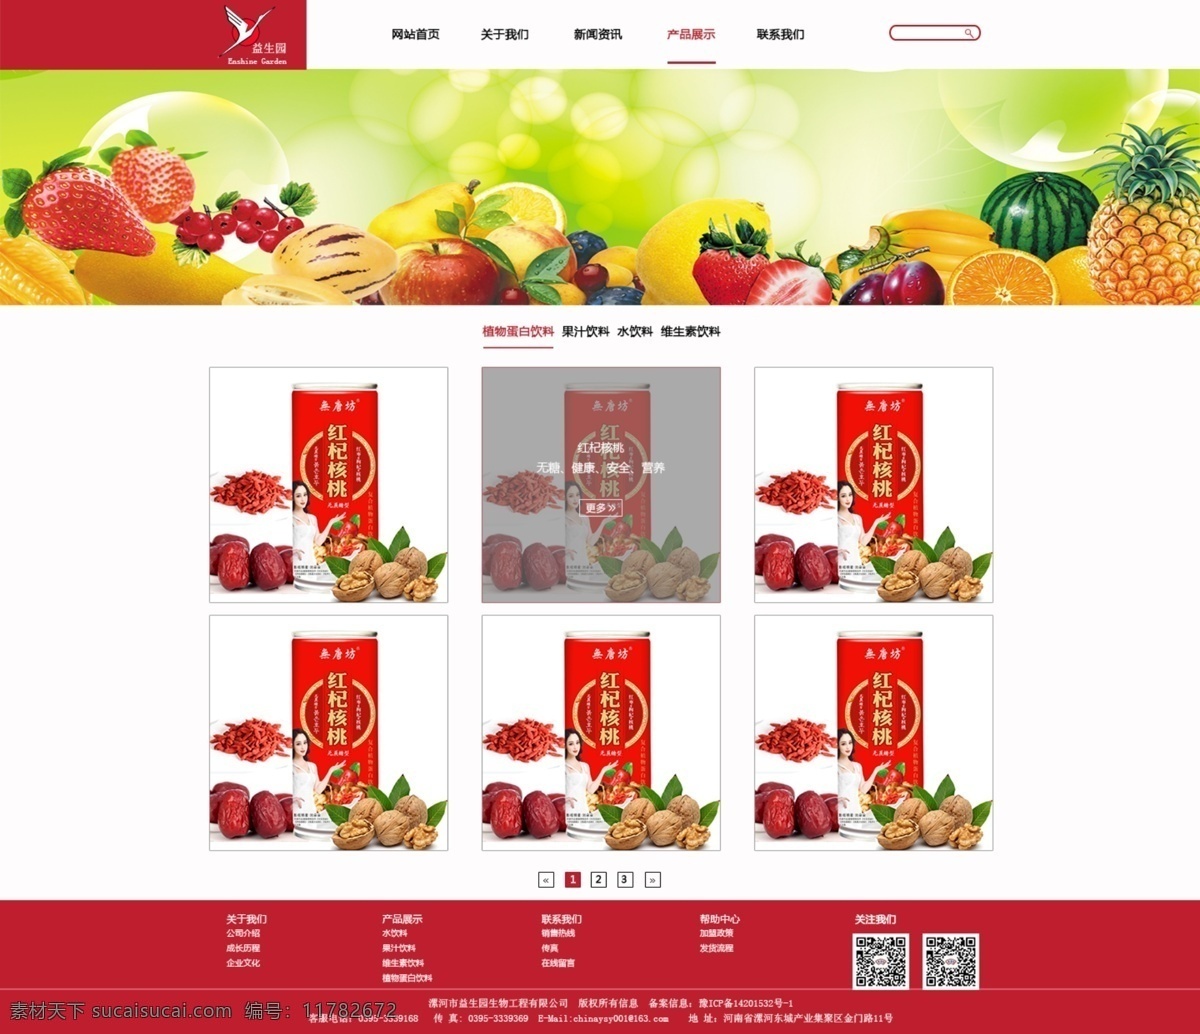 益生 园 2016 年 网站 新版 产品展示页 简洁 红色 白色